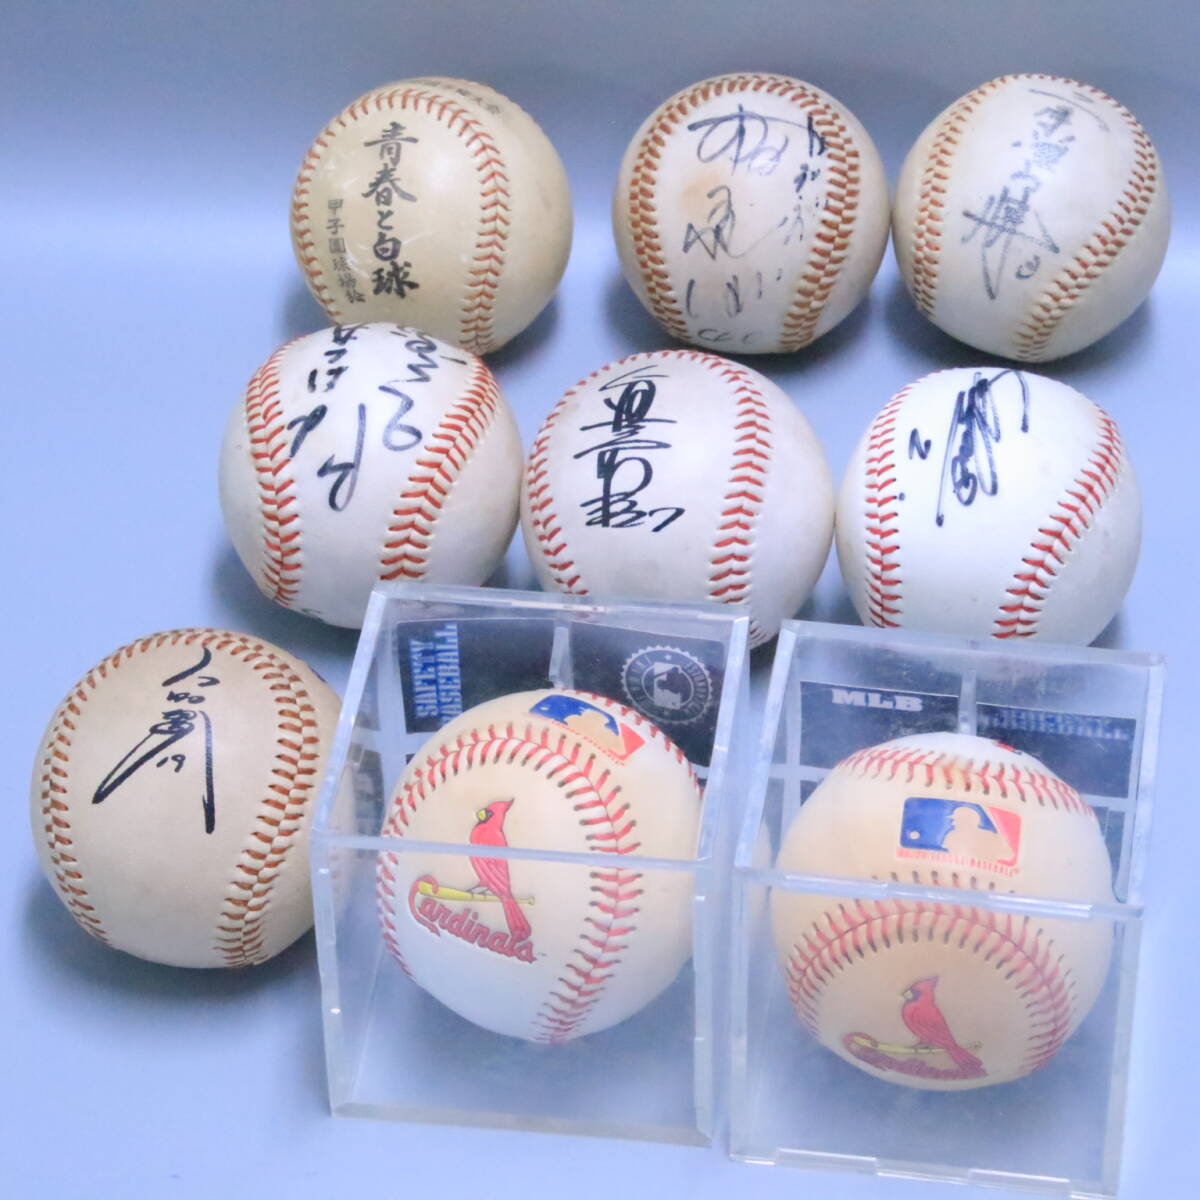 あ//A7194 Cardinals MLB 野球ボール(ケース入り)2個/野球 日本選手 サイン入り野球ボール6個/その他1個  合計9個の画像1